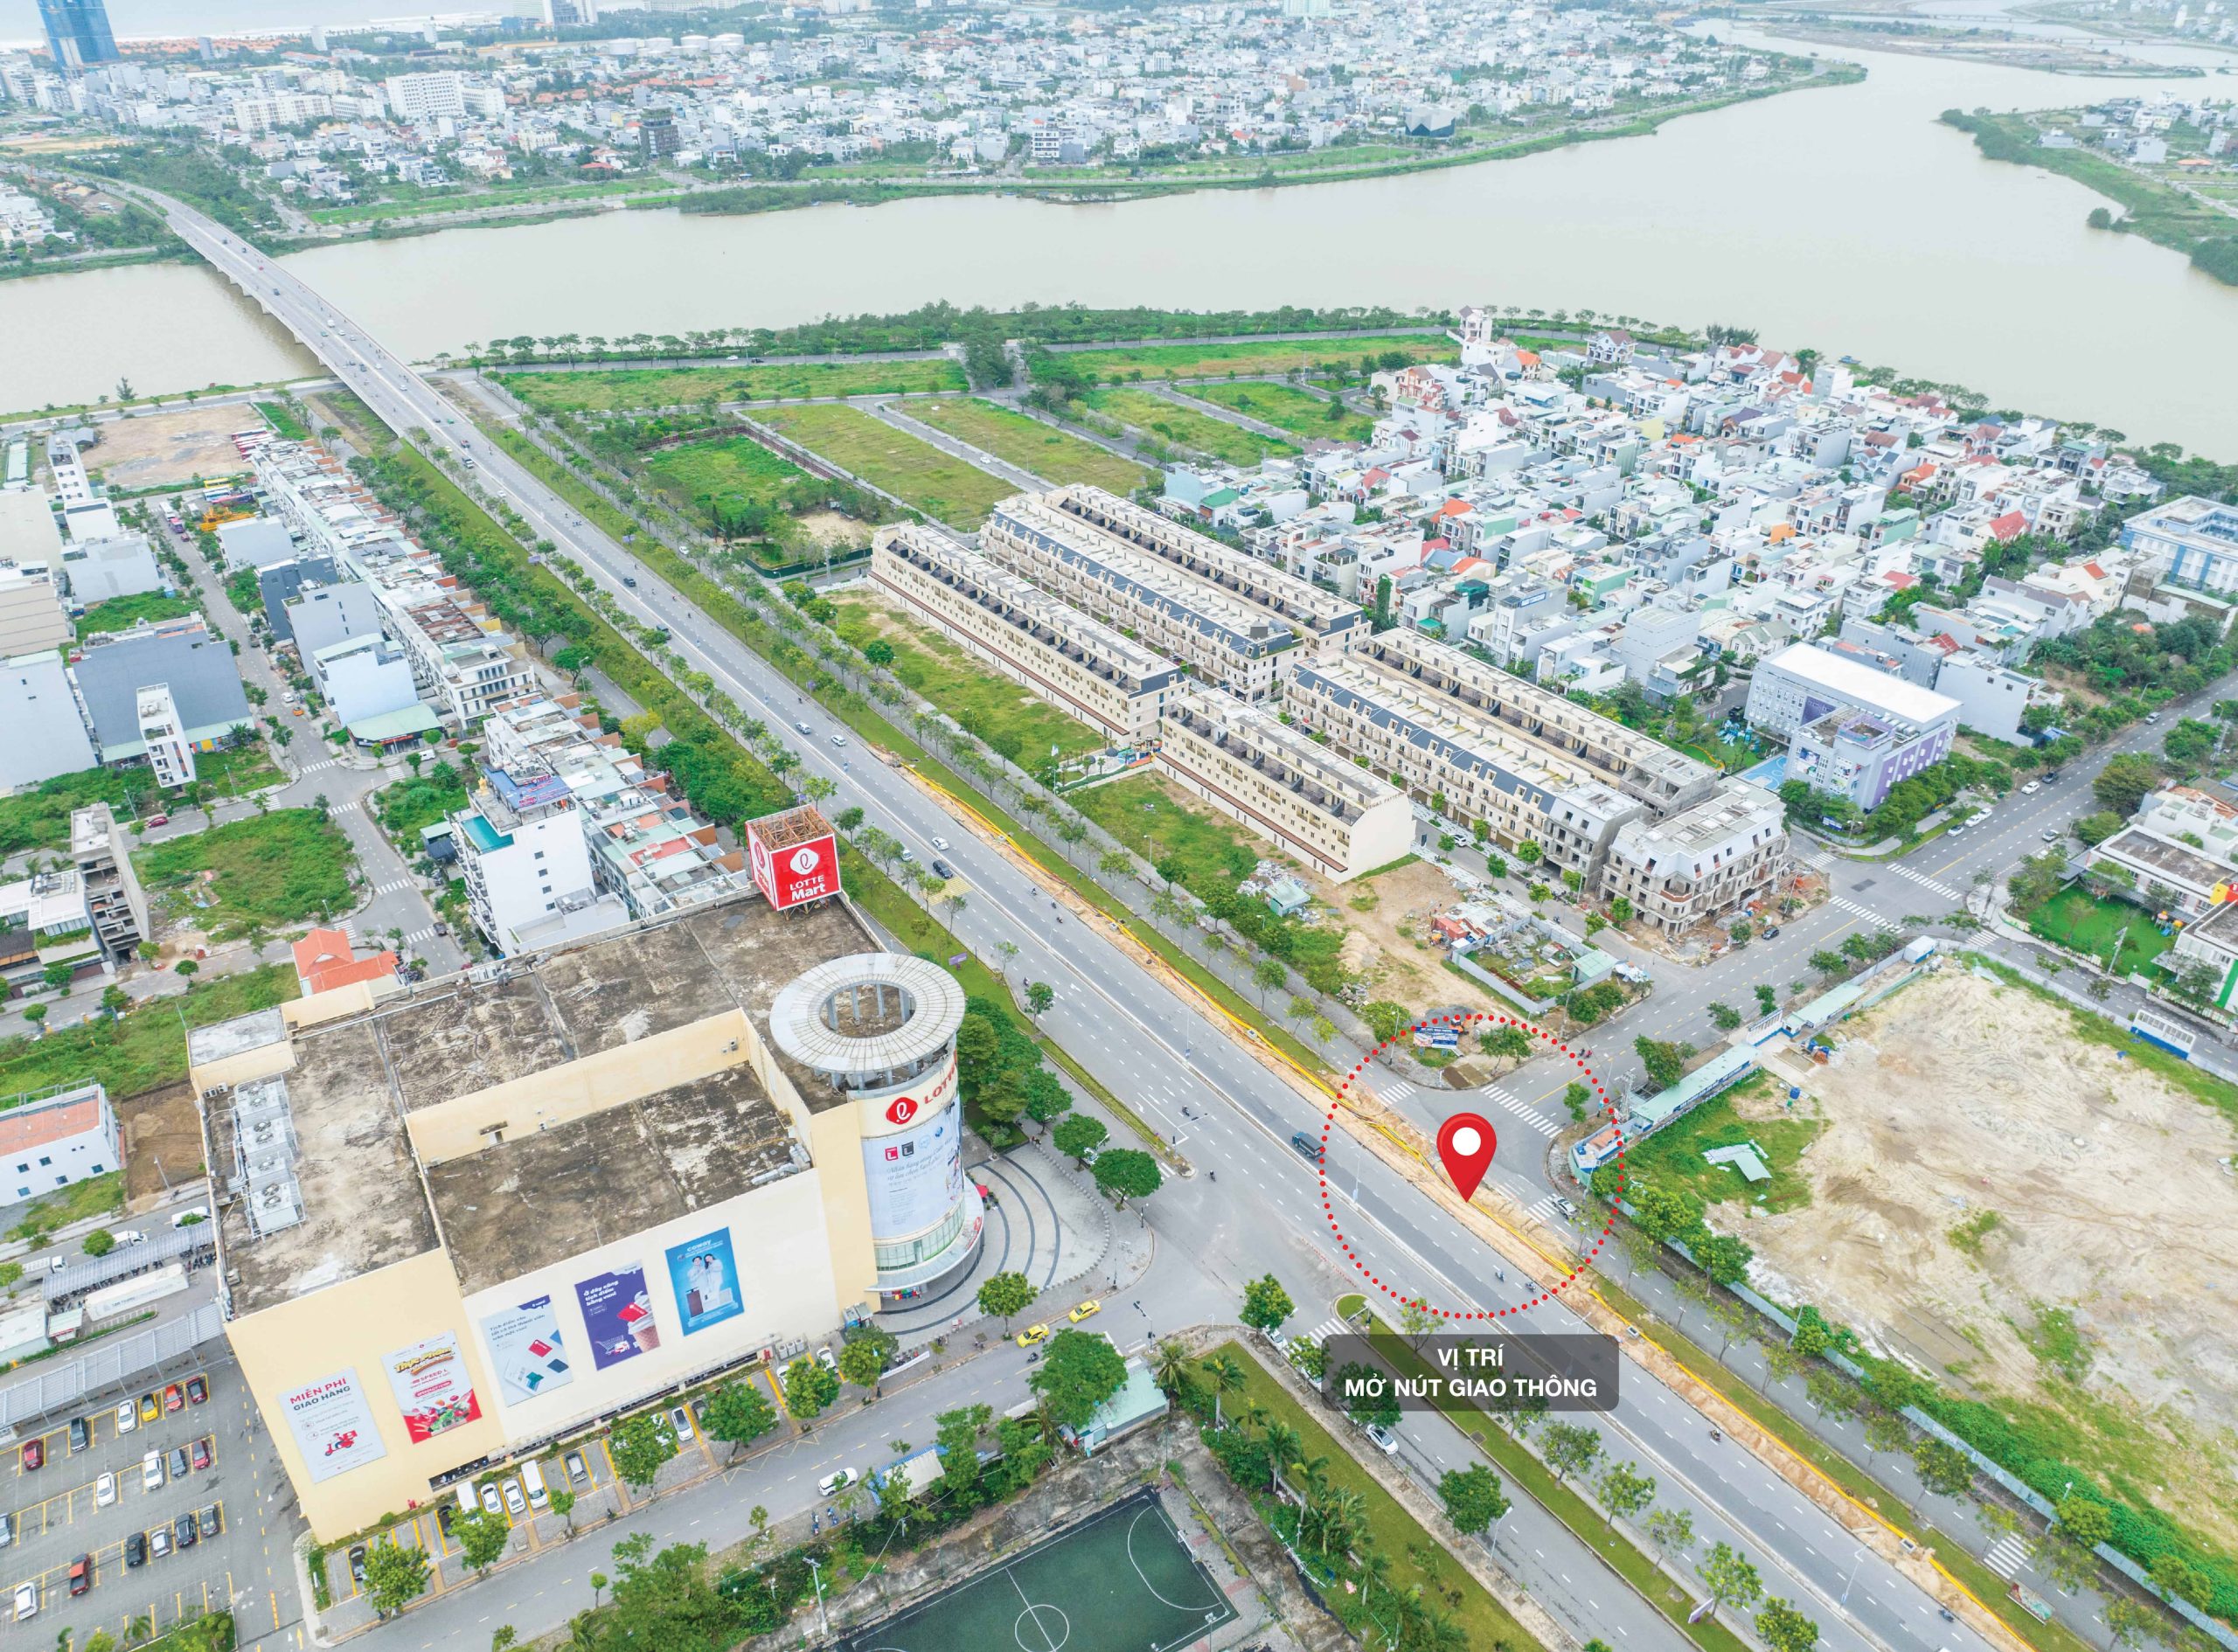 Mở nút giao thông trọng điểm Trần Đăng Ninh, dự án Regal Pavillon hưởng lợi